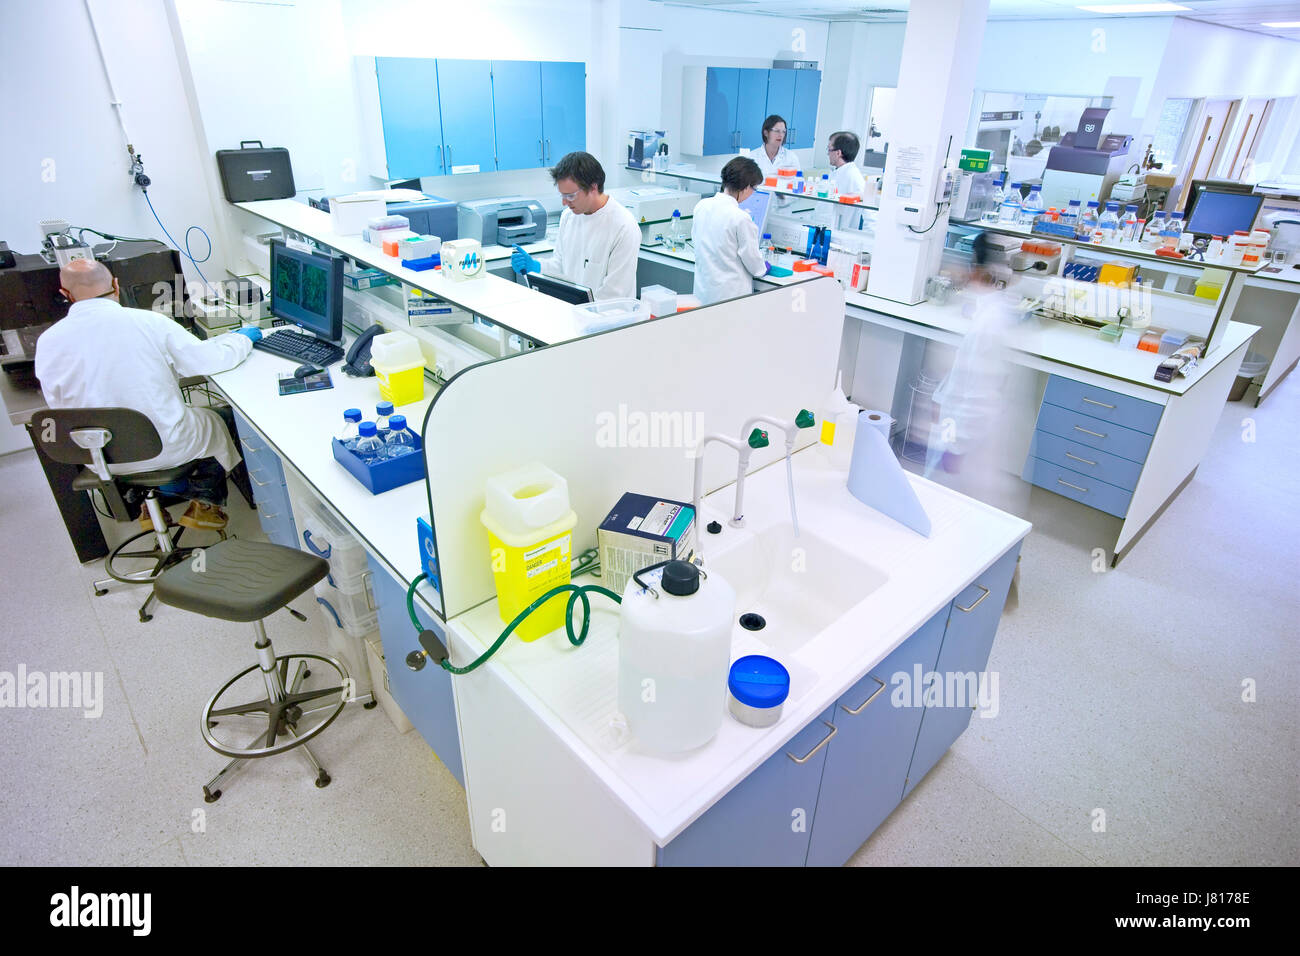 Laboratoire de sciences biologiques au Royaume-Uni, travaillant principalement sur la recherche sur les cellules souches Banque D'Images